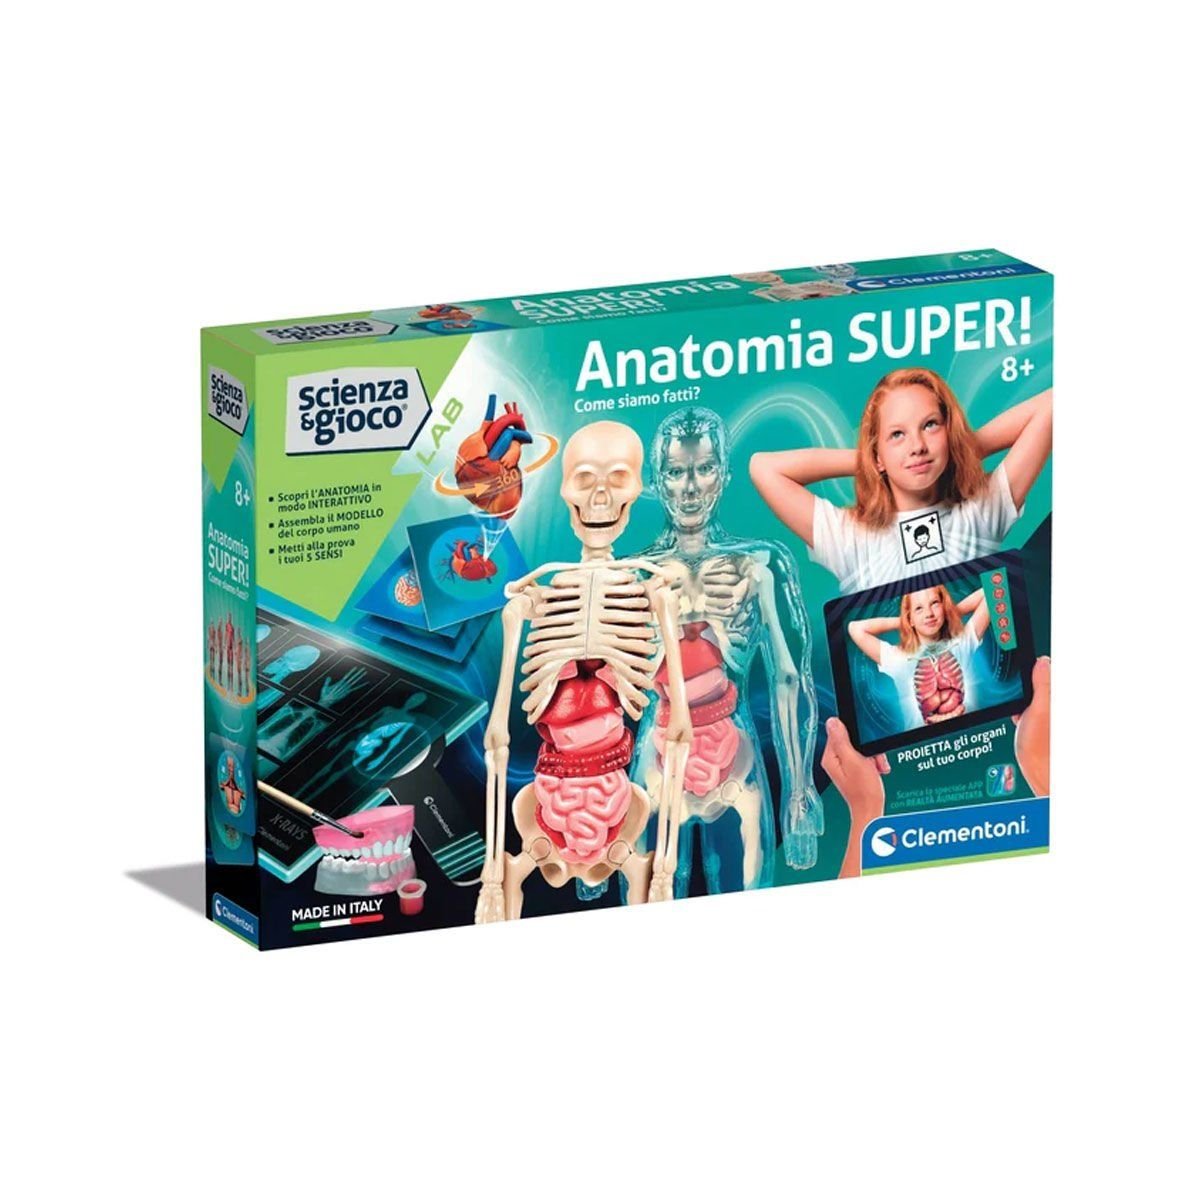 64474 Bilim ve Oyun - Süper Anatomi +8 yaş